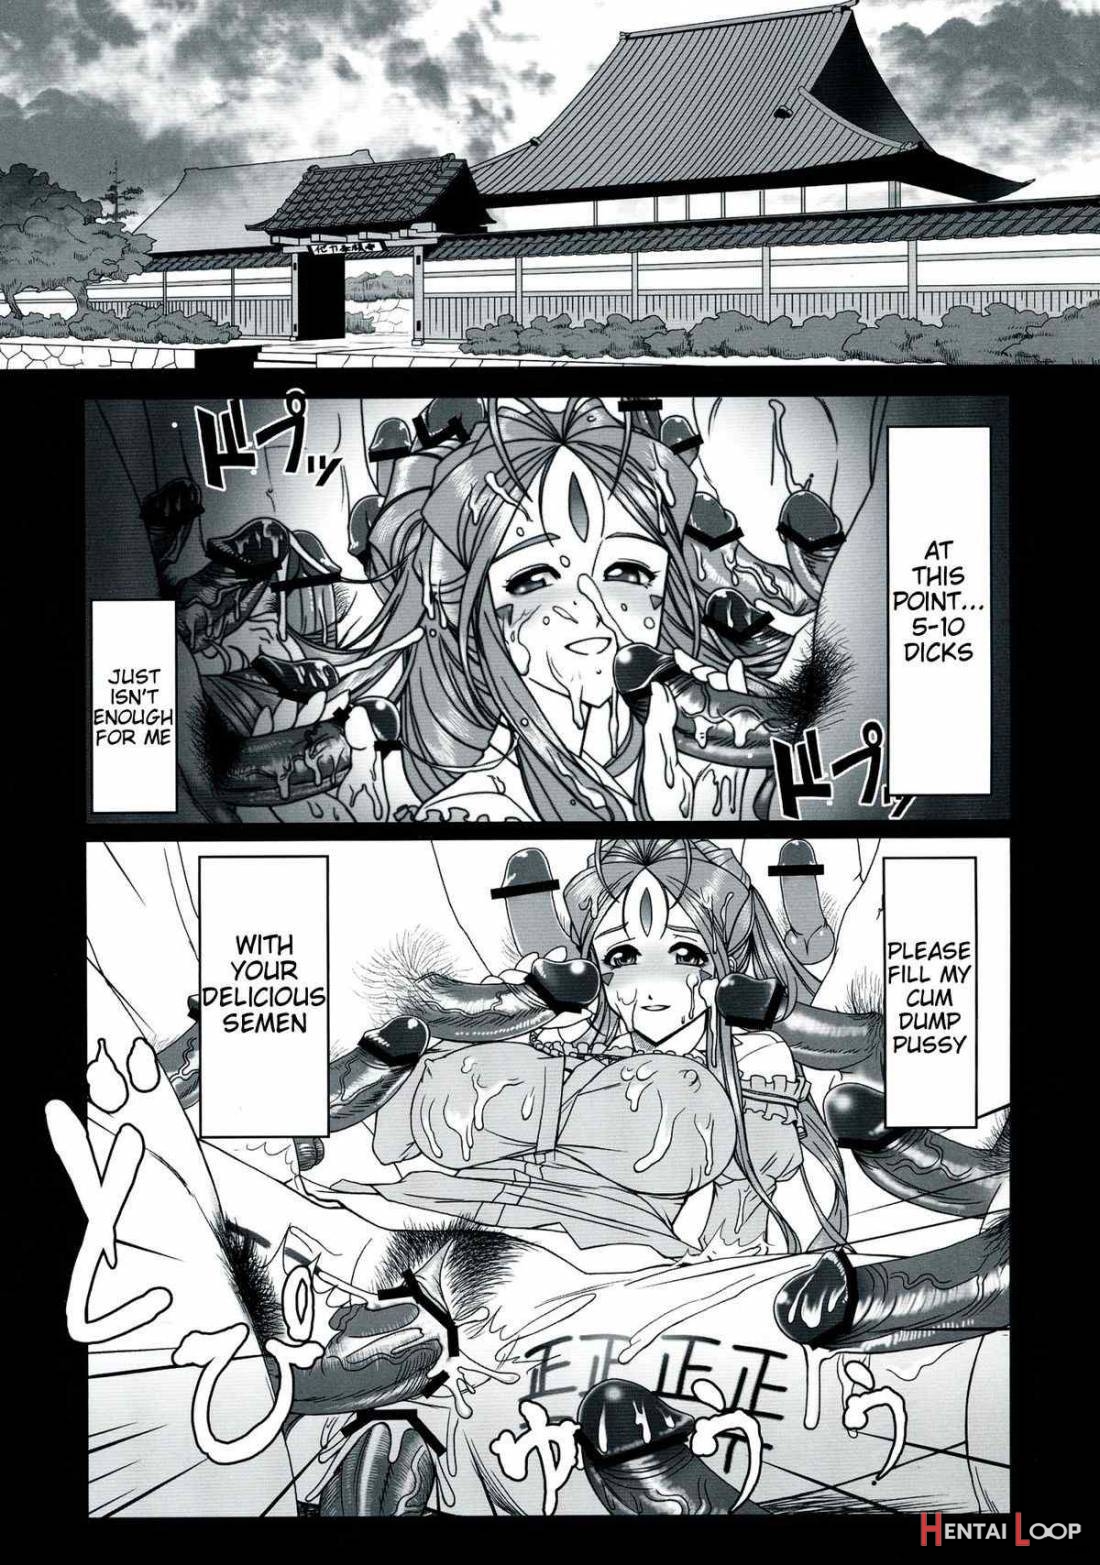 Gangu Megami 1 page 2